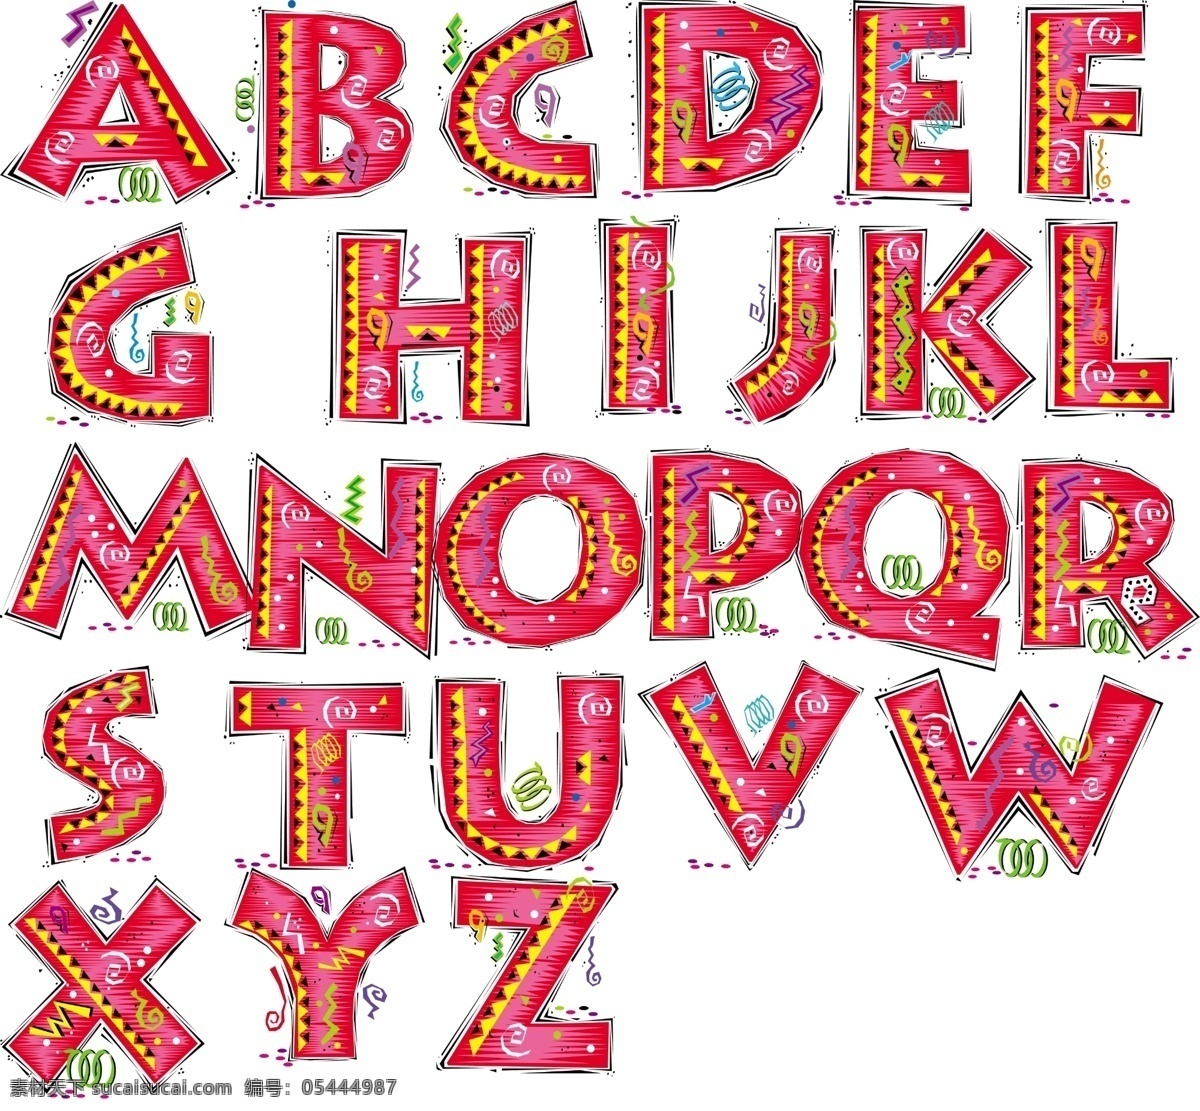 英文 字母 英文字母 卡通字体 可爱字体 分层 源文件库 字体下载 英文字体